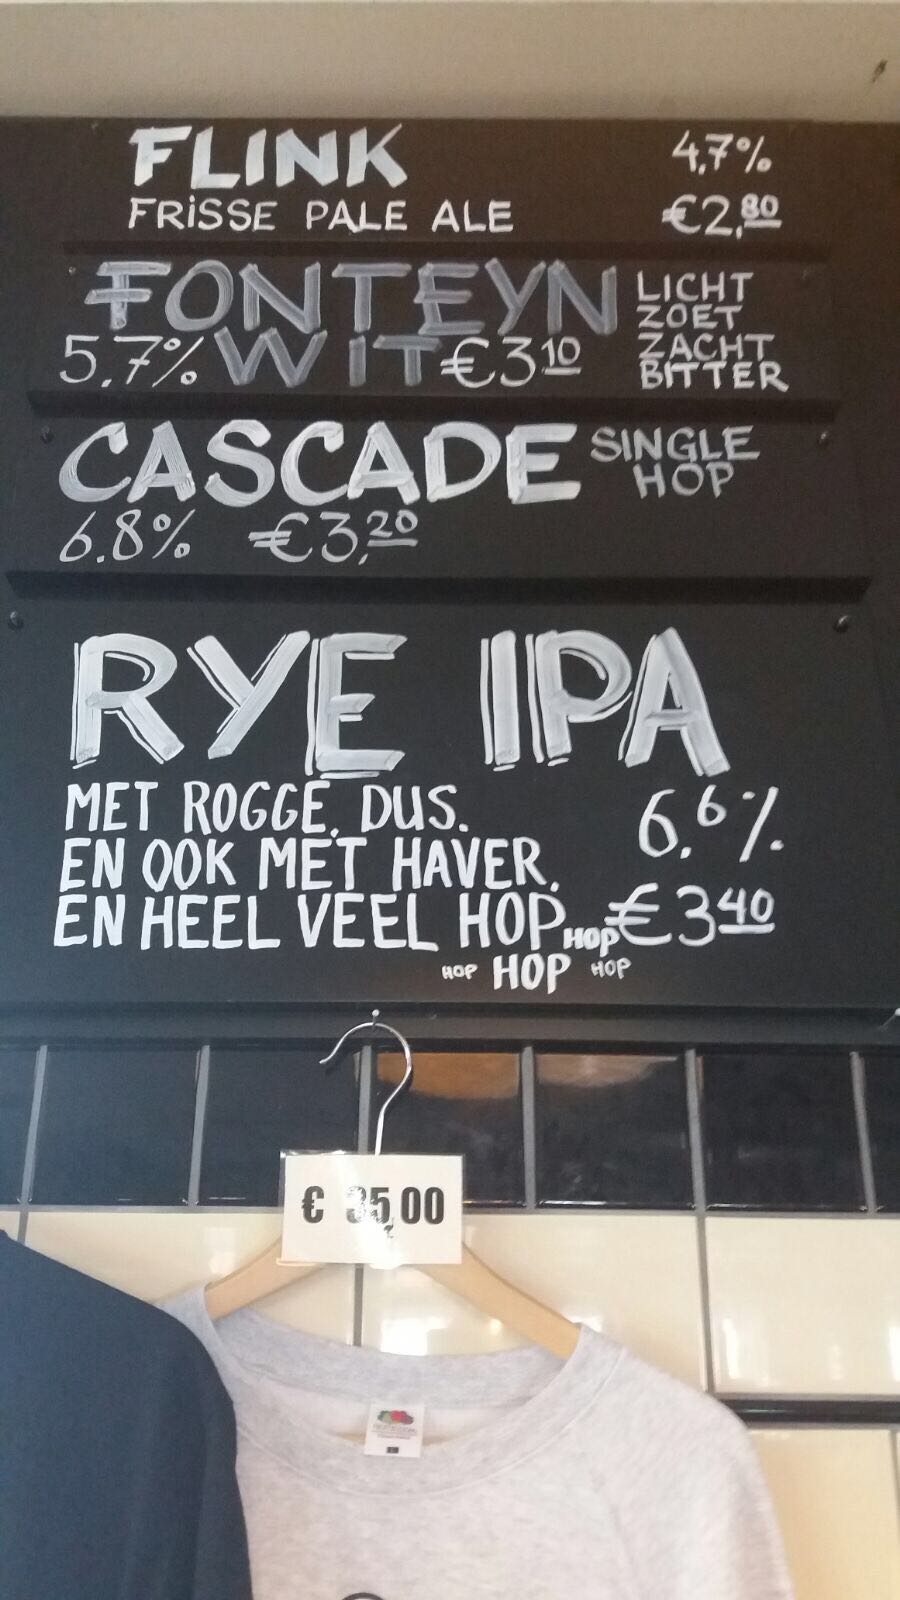 Rye IPA Brouwerij 't IJ